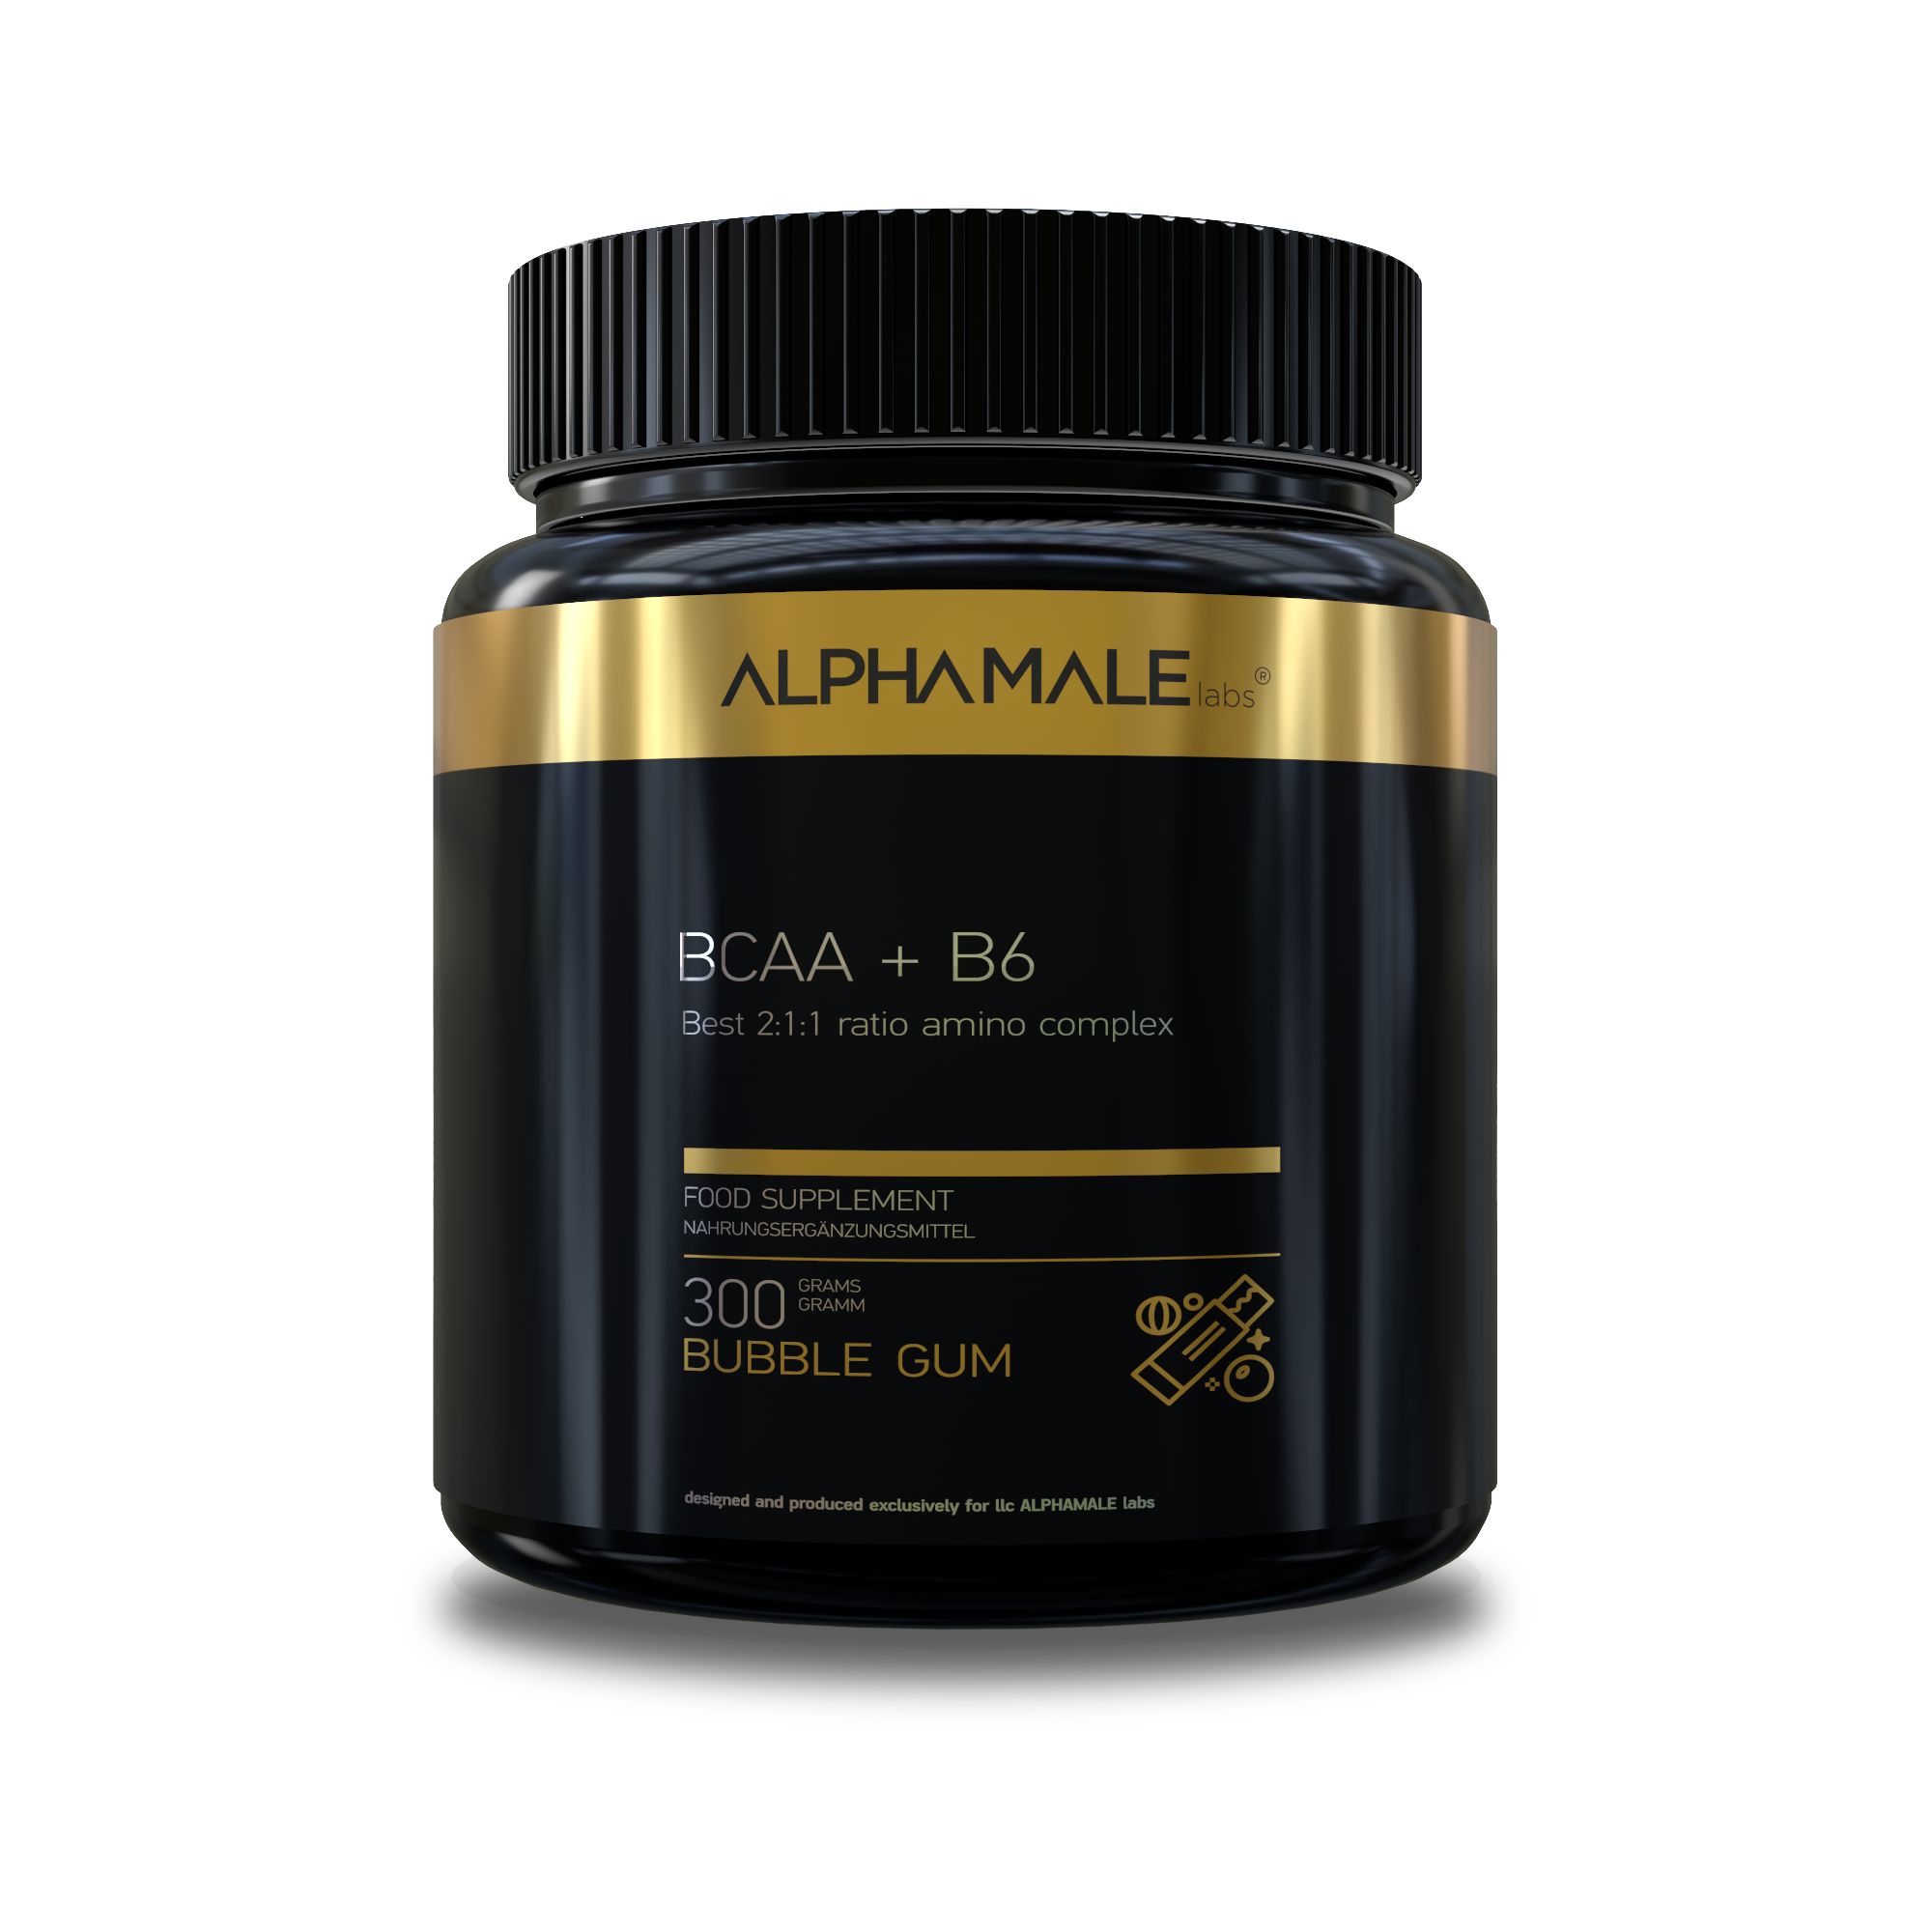 ALPHAMALE labs BCAA+B6 premium 300 г, баббл гам